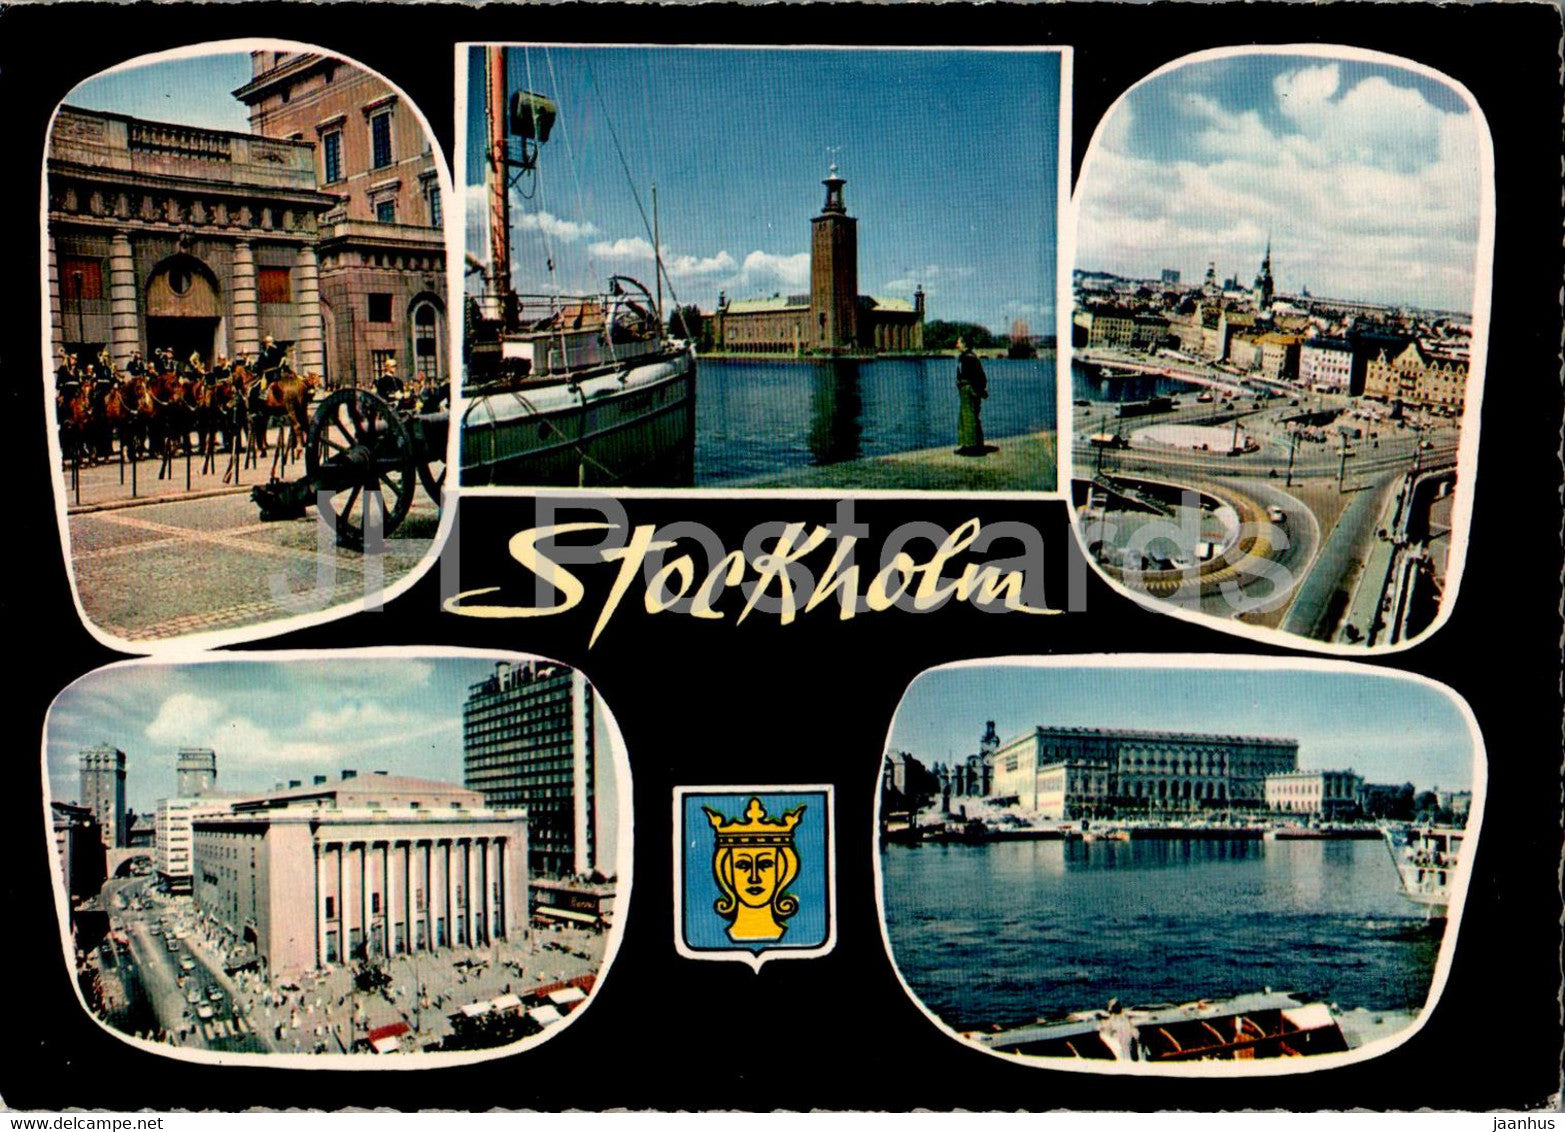 Stockholm - multiview - 130/45 - Sweden - unused - JH Postcards